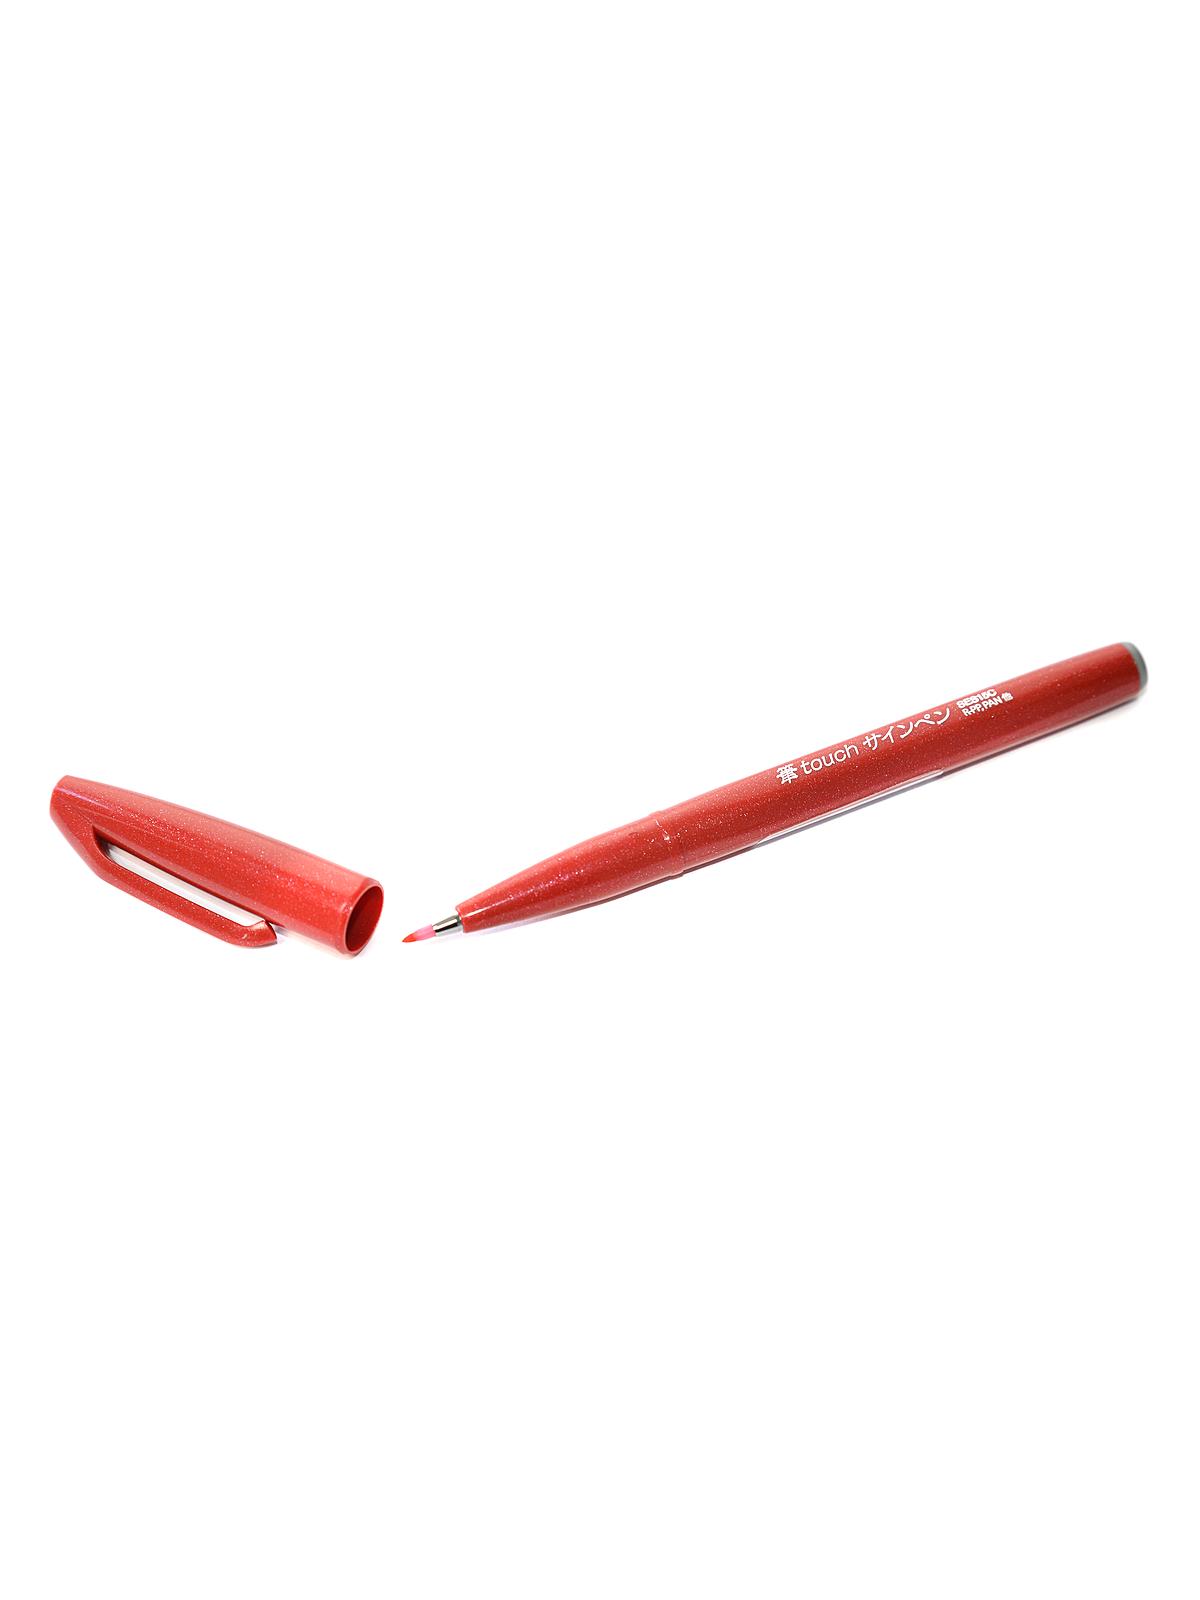 Sign Pen Brush-Tip Red